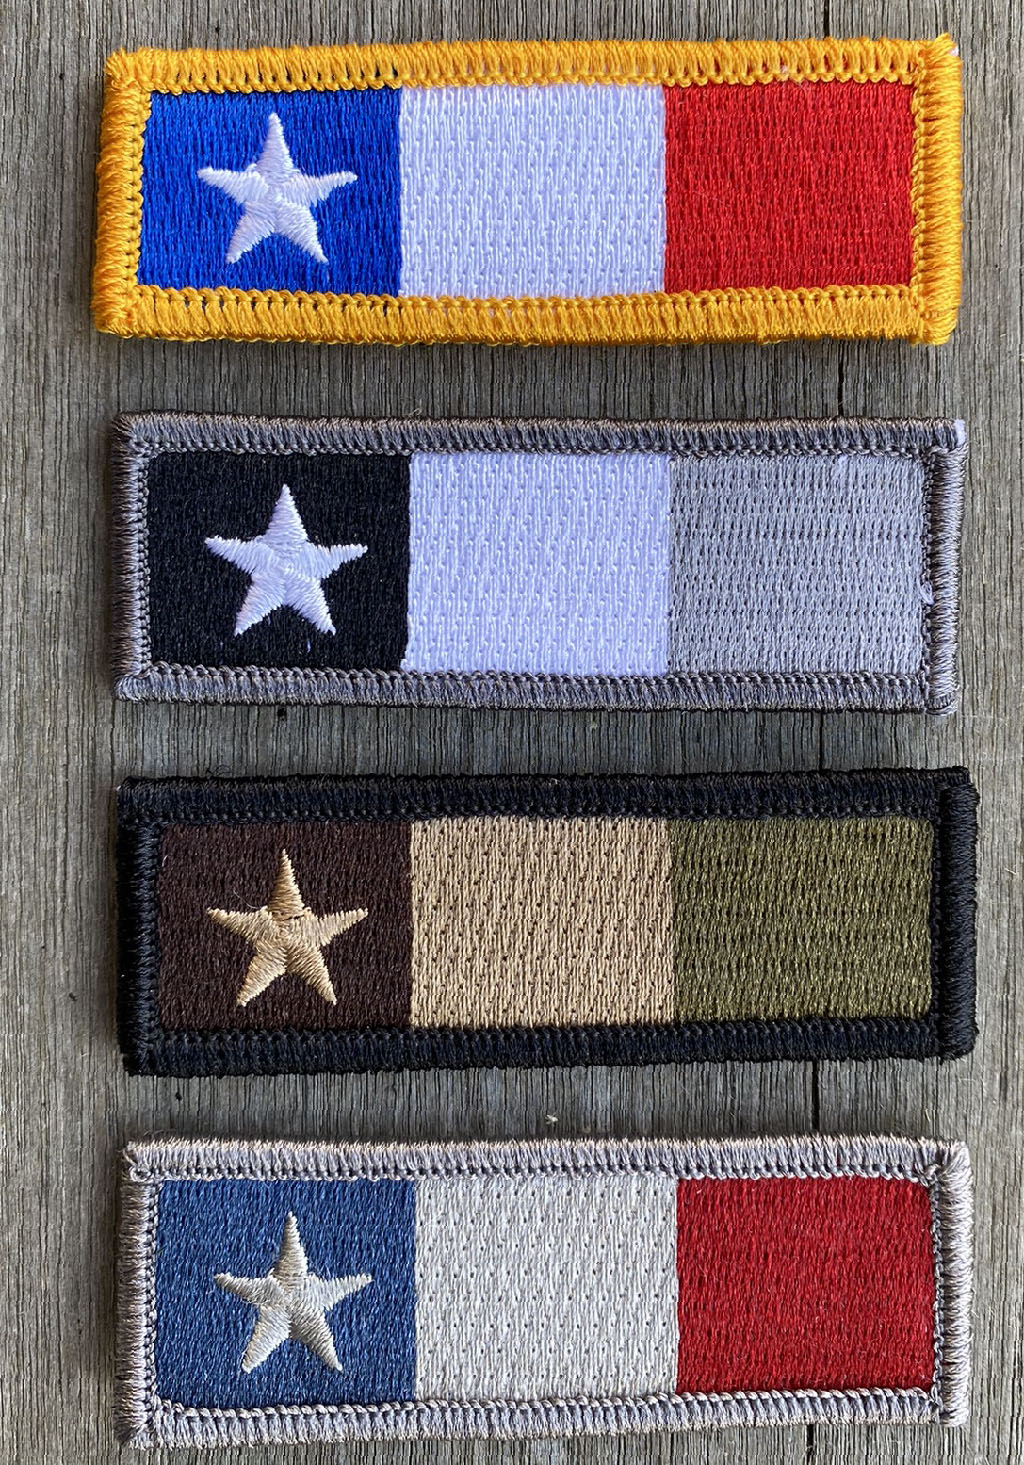 Dodson's Texas Tri-Color Tactical Morale Patch  - 1" x 3"